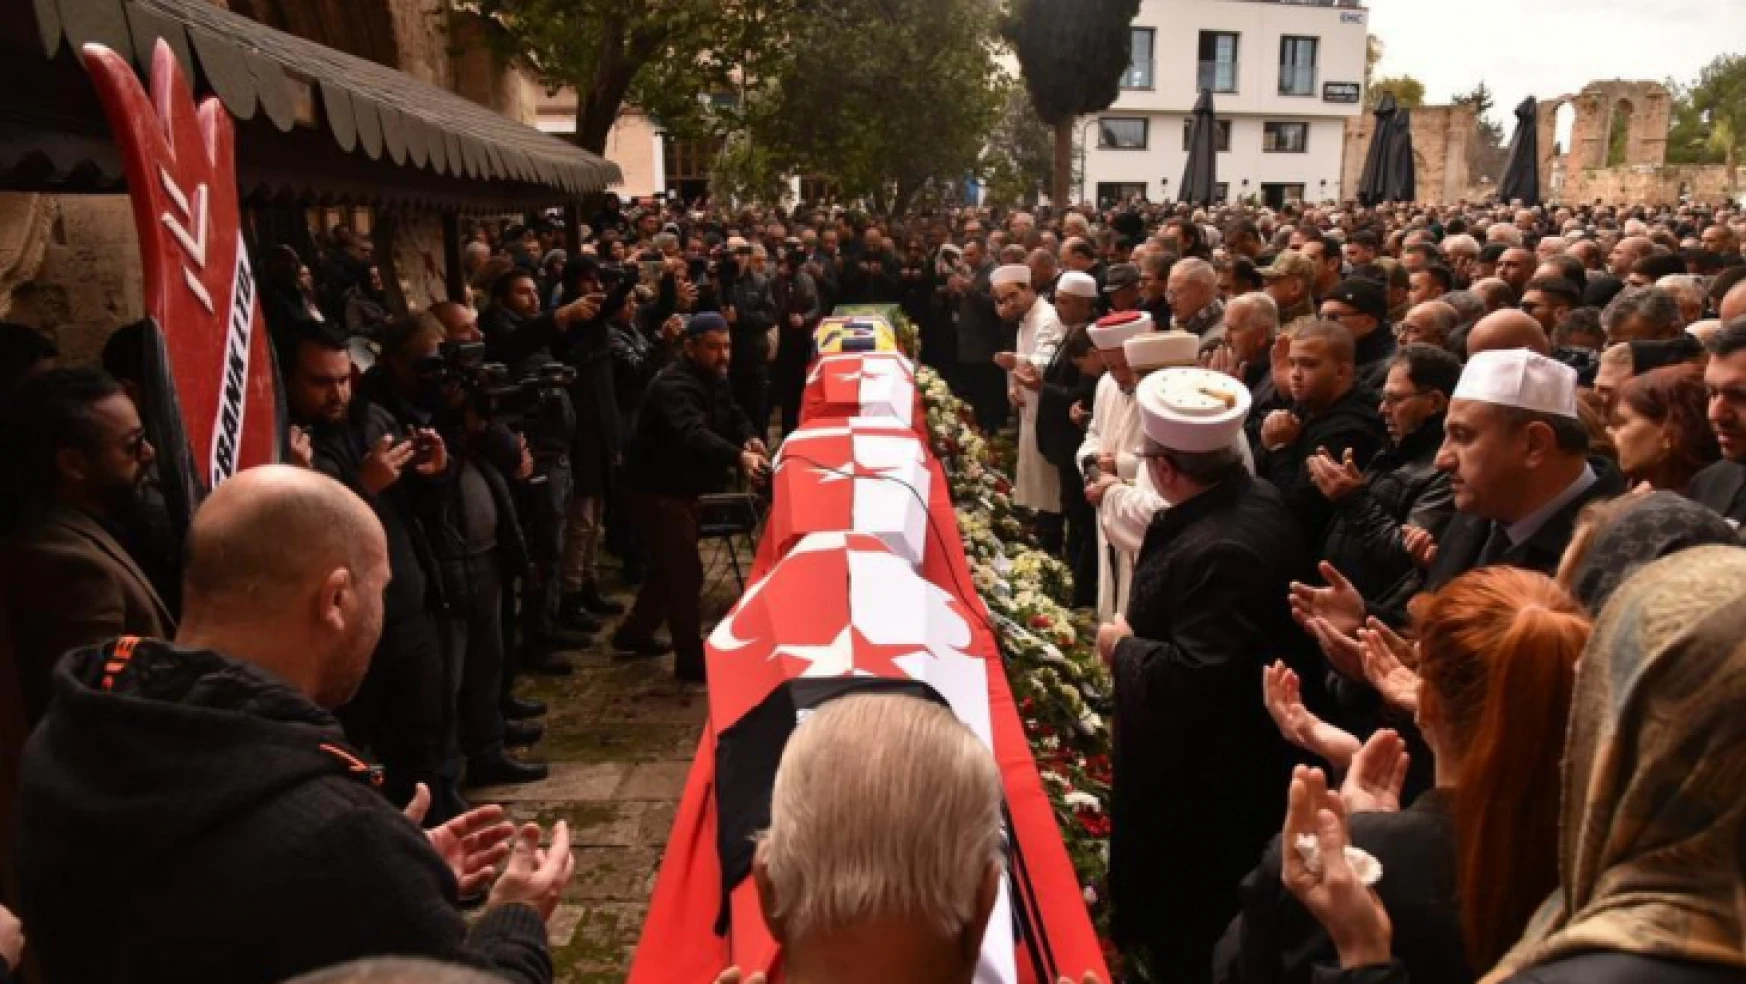 KKTC, Adıyaman'da hayatını kaybeden evlatlarını son yolculuklarına uğurluyor